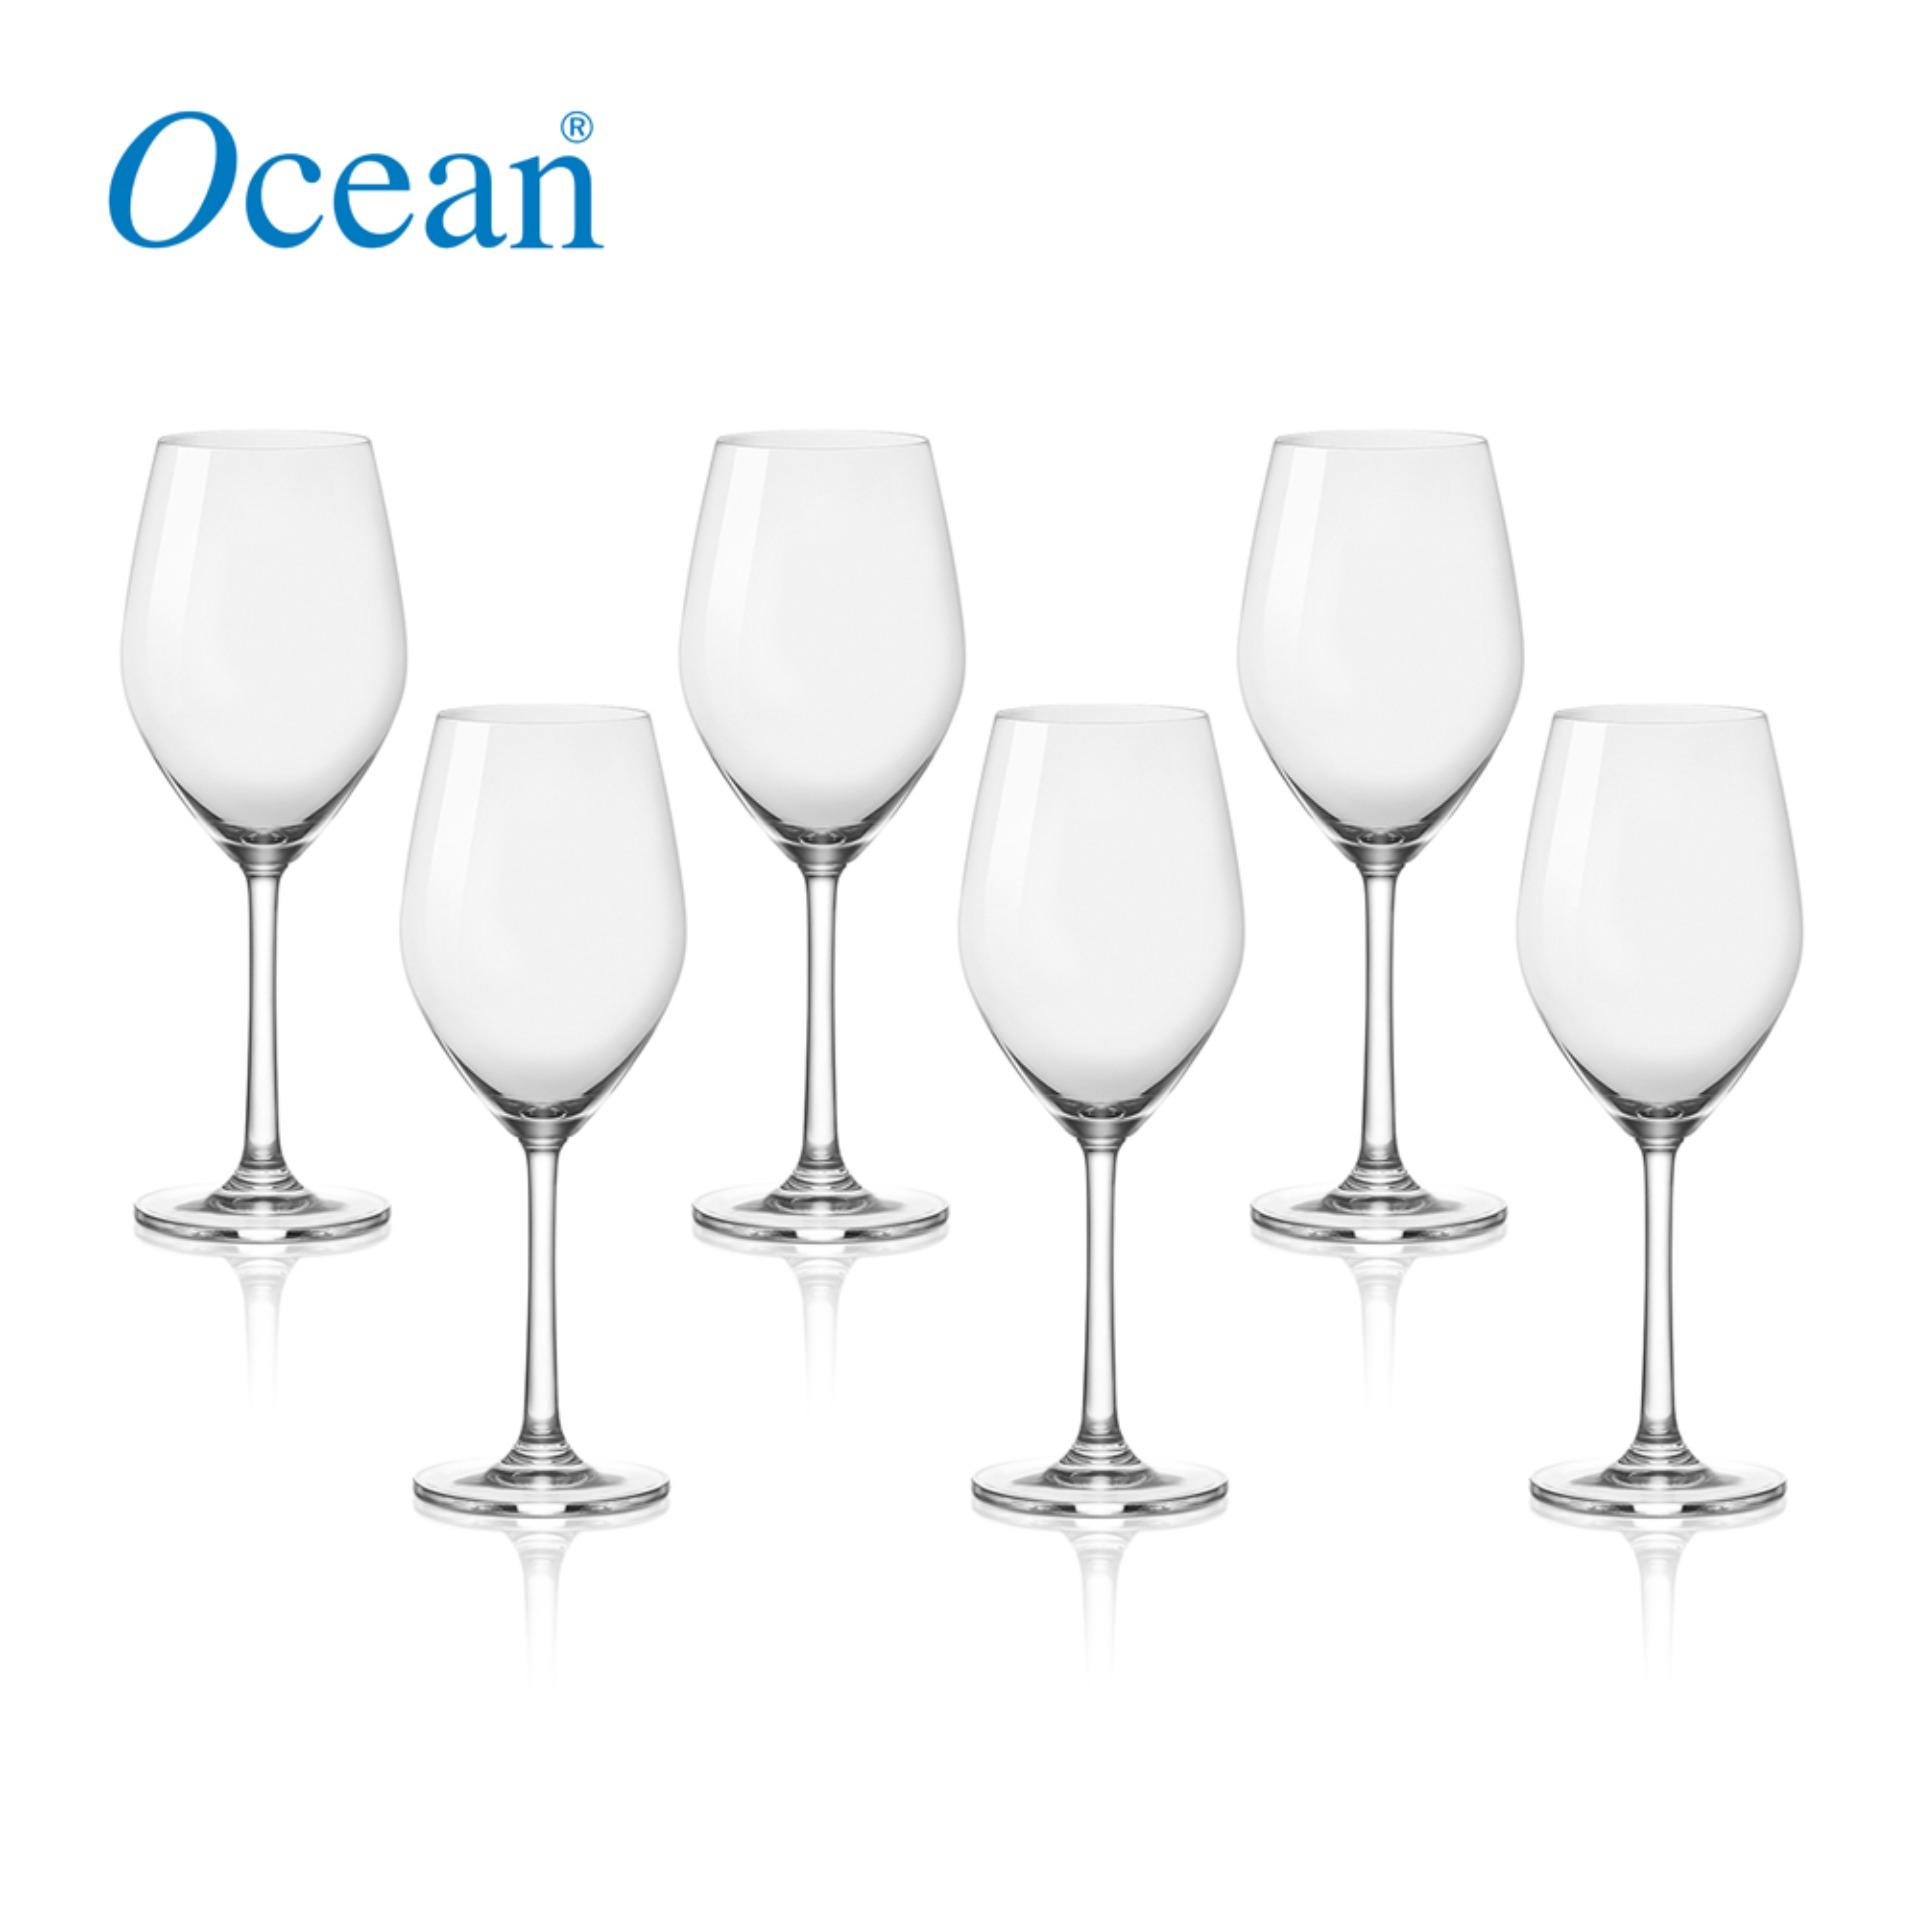 Sante white wine glass 340cc